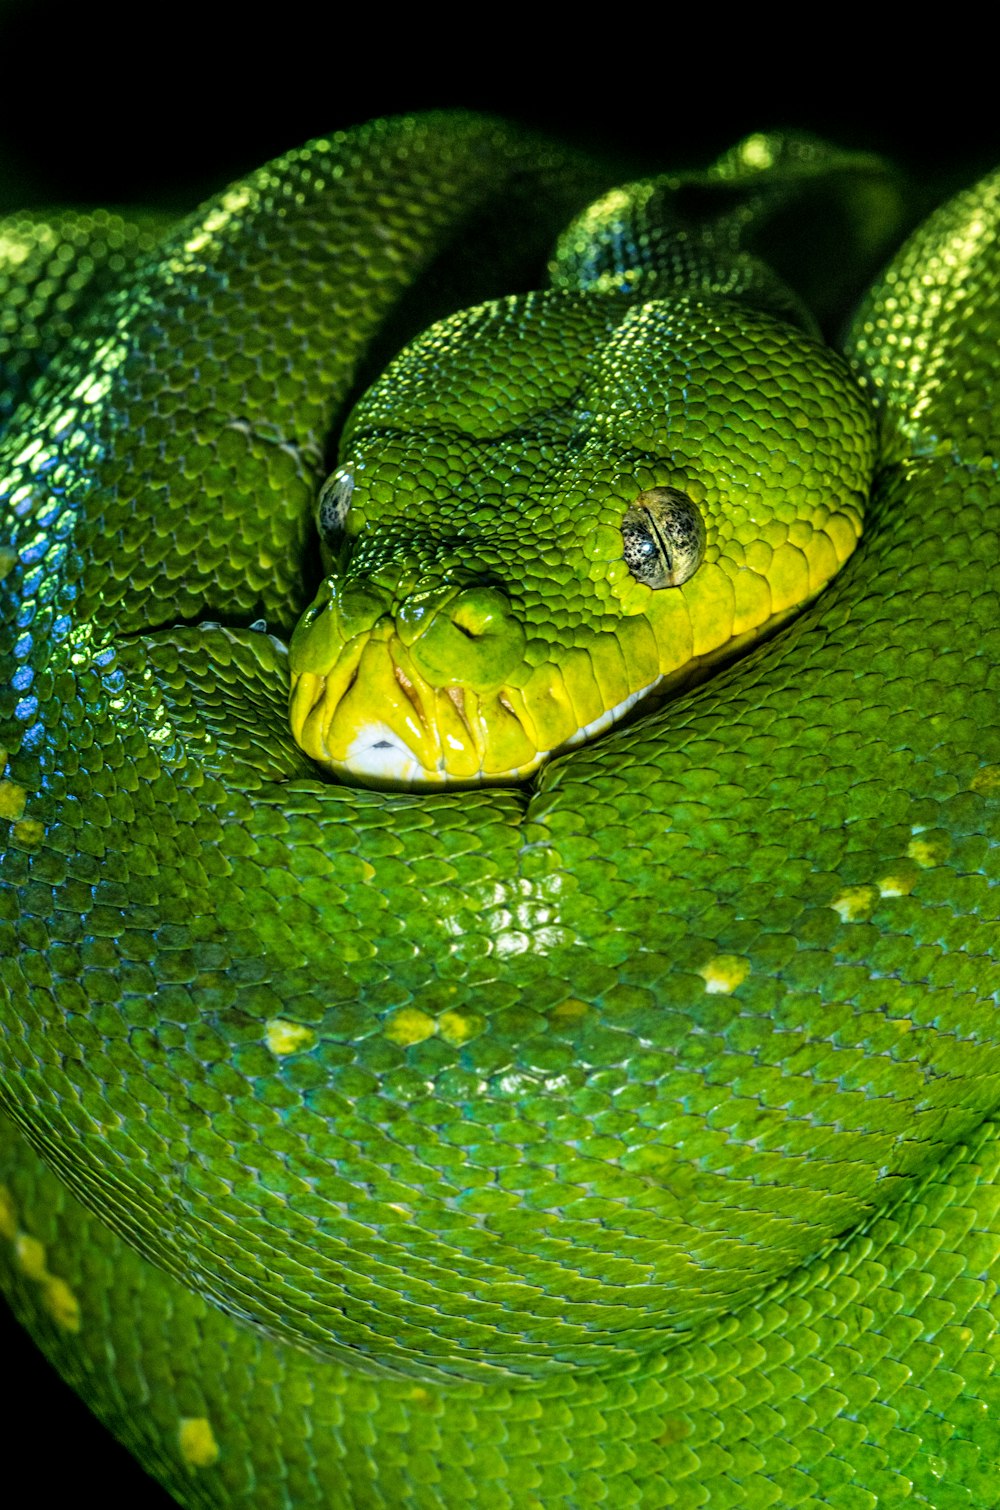 Serpiente verde